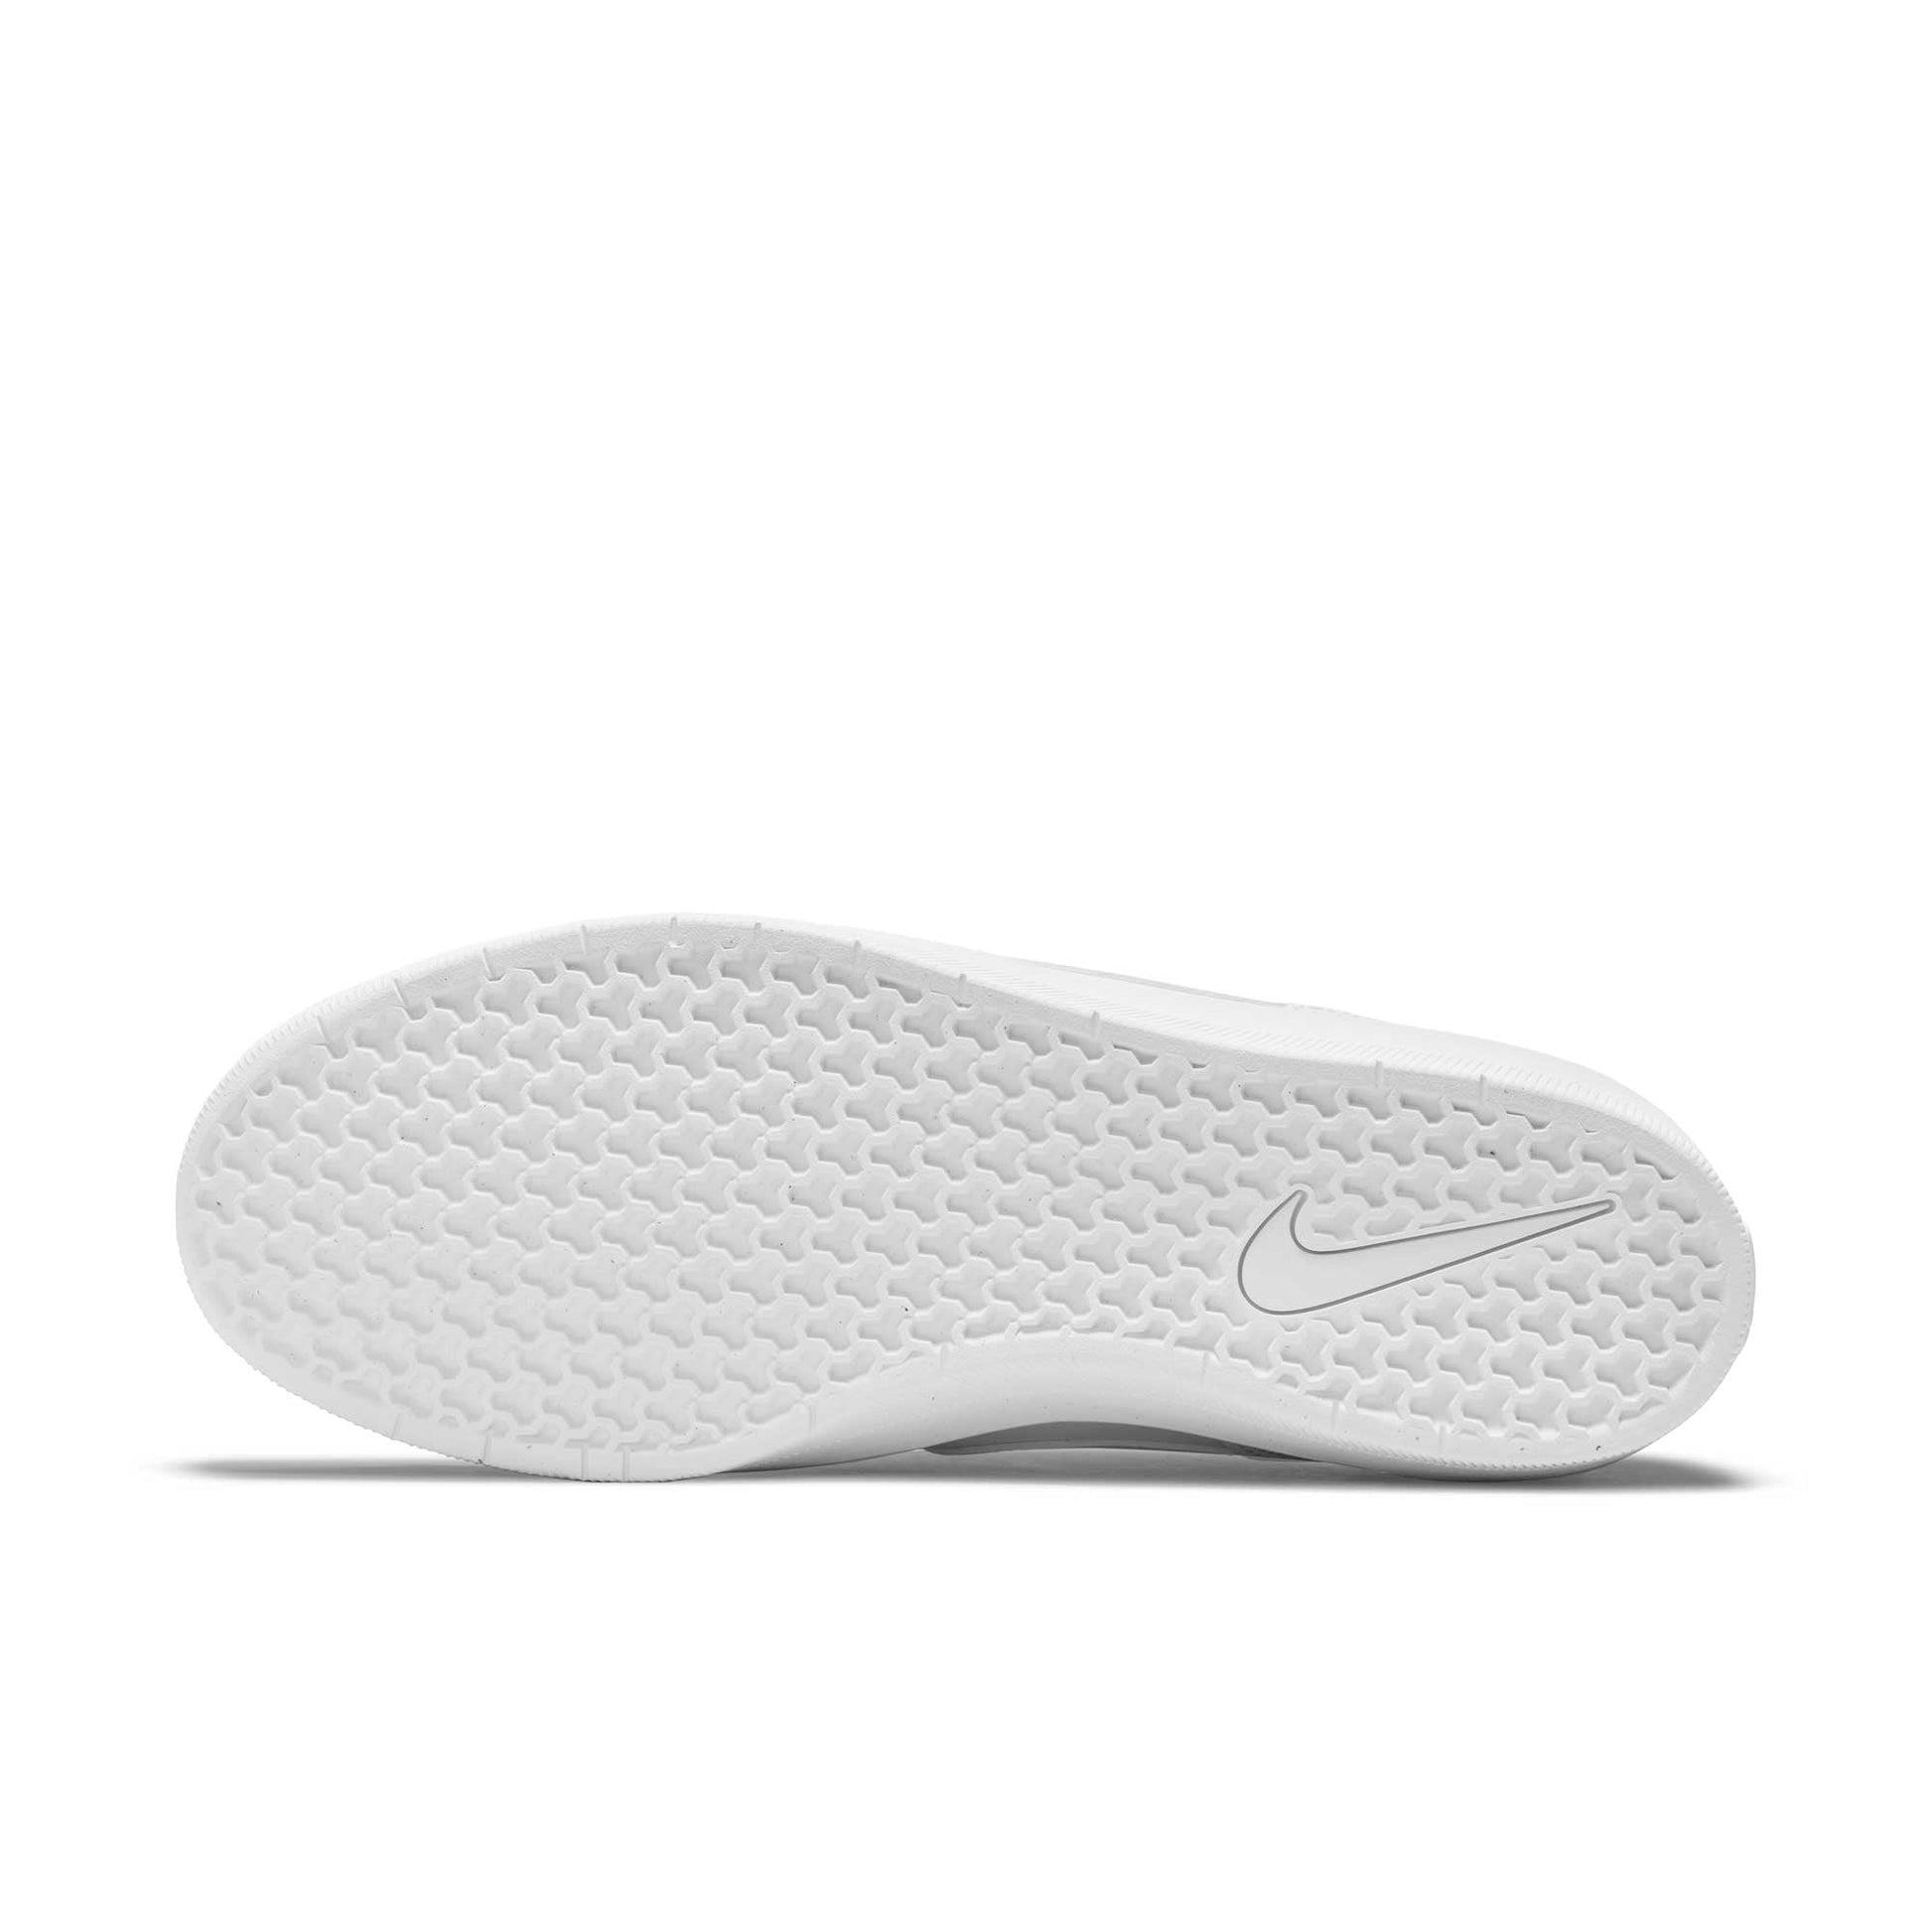 Nike SB Force 58 Premium, white/white-white-white - Tiki Room Skateboards - 8